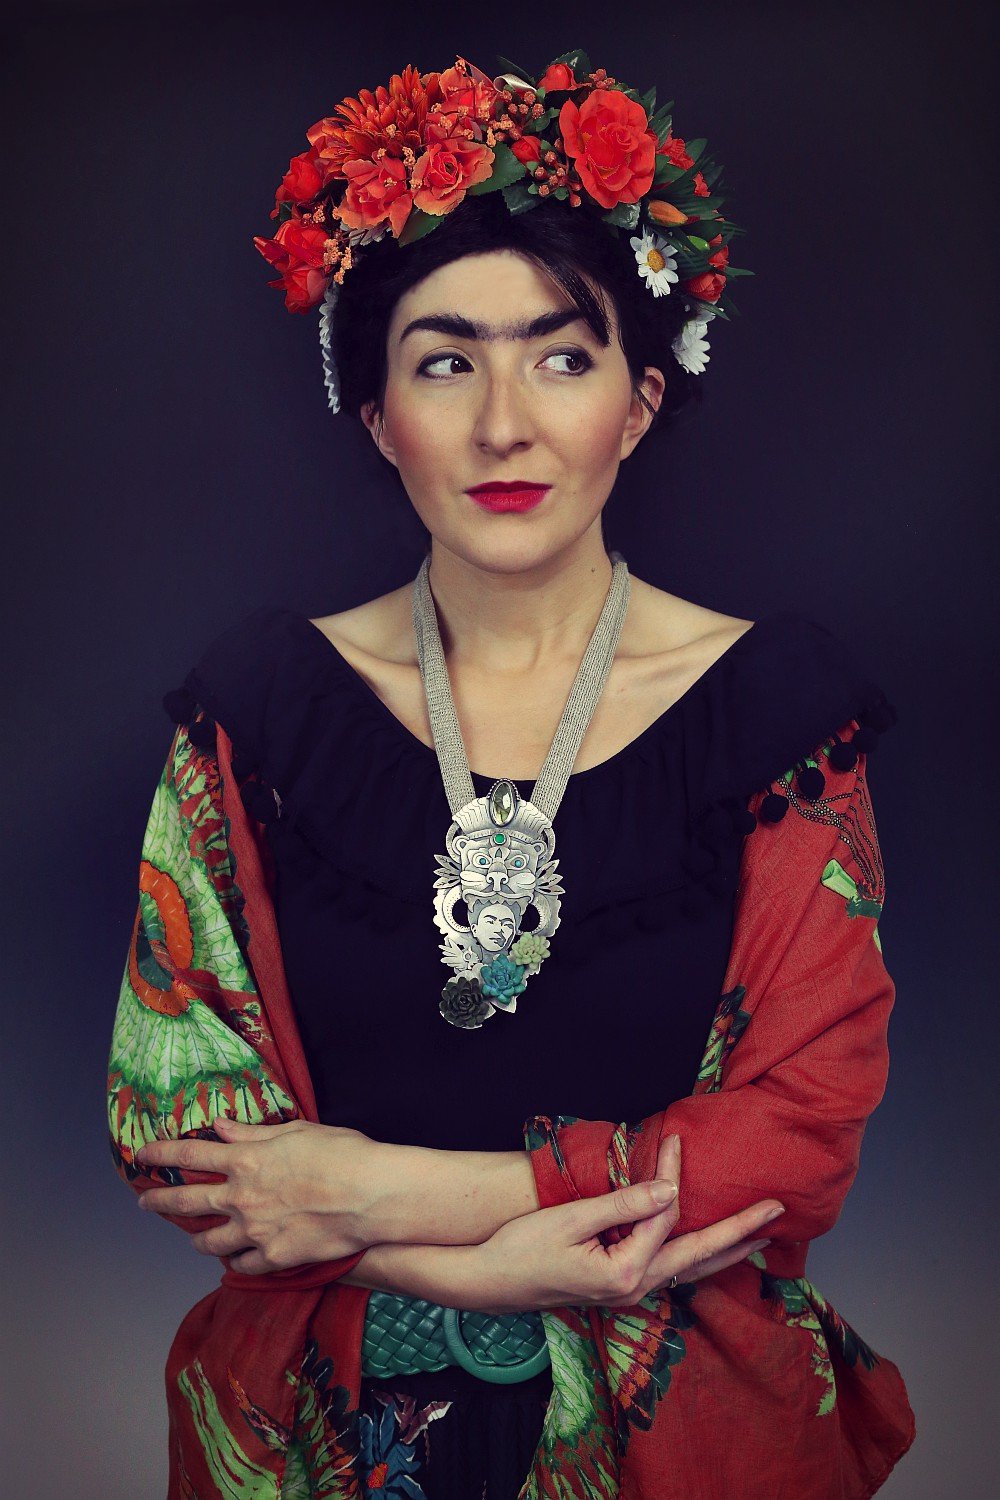 Frida, Frida Kahlo, Frida necklace, Frida jewelry, Frida pendant, Frida naszyjnik, prekolumbijski naszyjnik, aztecki naszyjnik, naszyjnik z turkusami, etapy tworzenia, meksykańska biżuteria, biżuteria inspirowana meksykiem, marta Norenberg, proces tworzenia biżuterii, sztuk kilka biżuteria, biżuteria ze srebra, biżuteria autorska, biżuteria artystyczna, blog o biżuterii